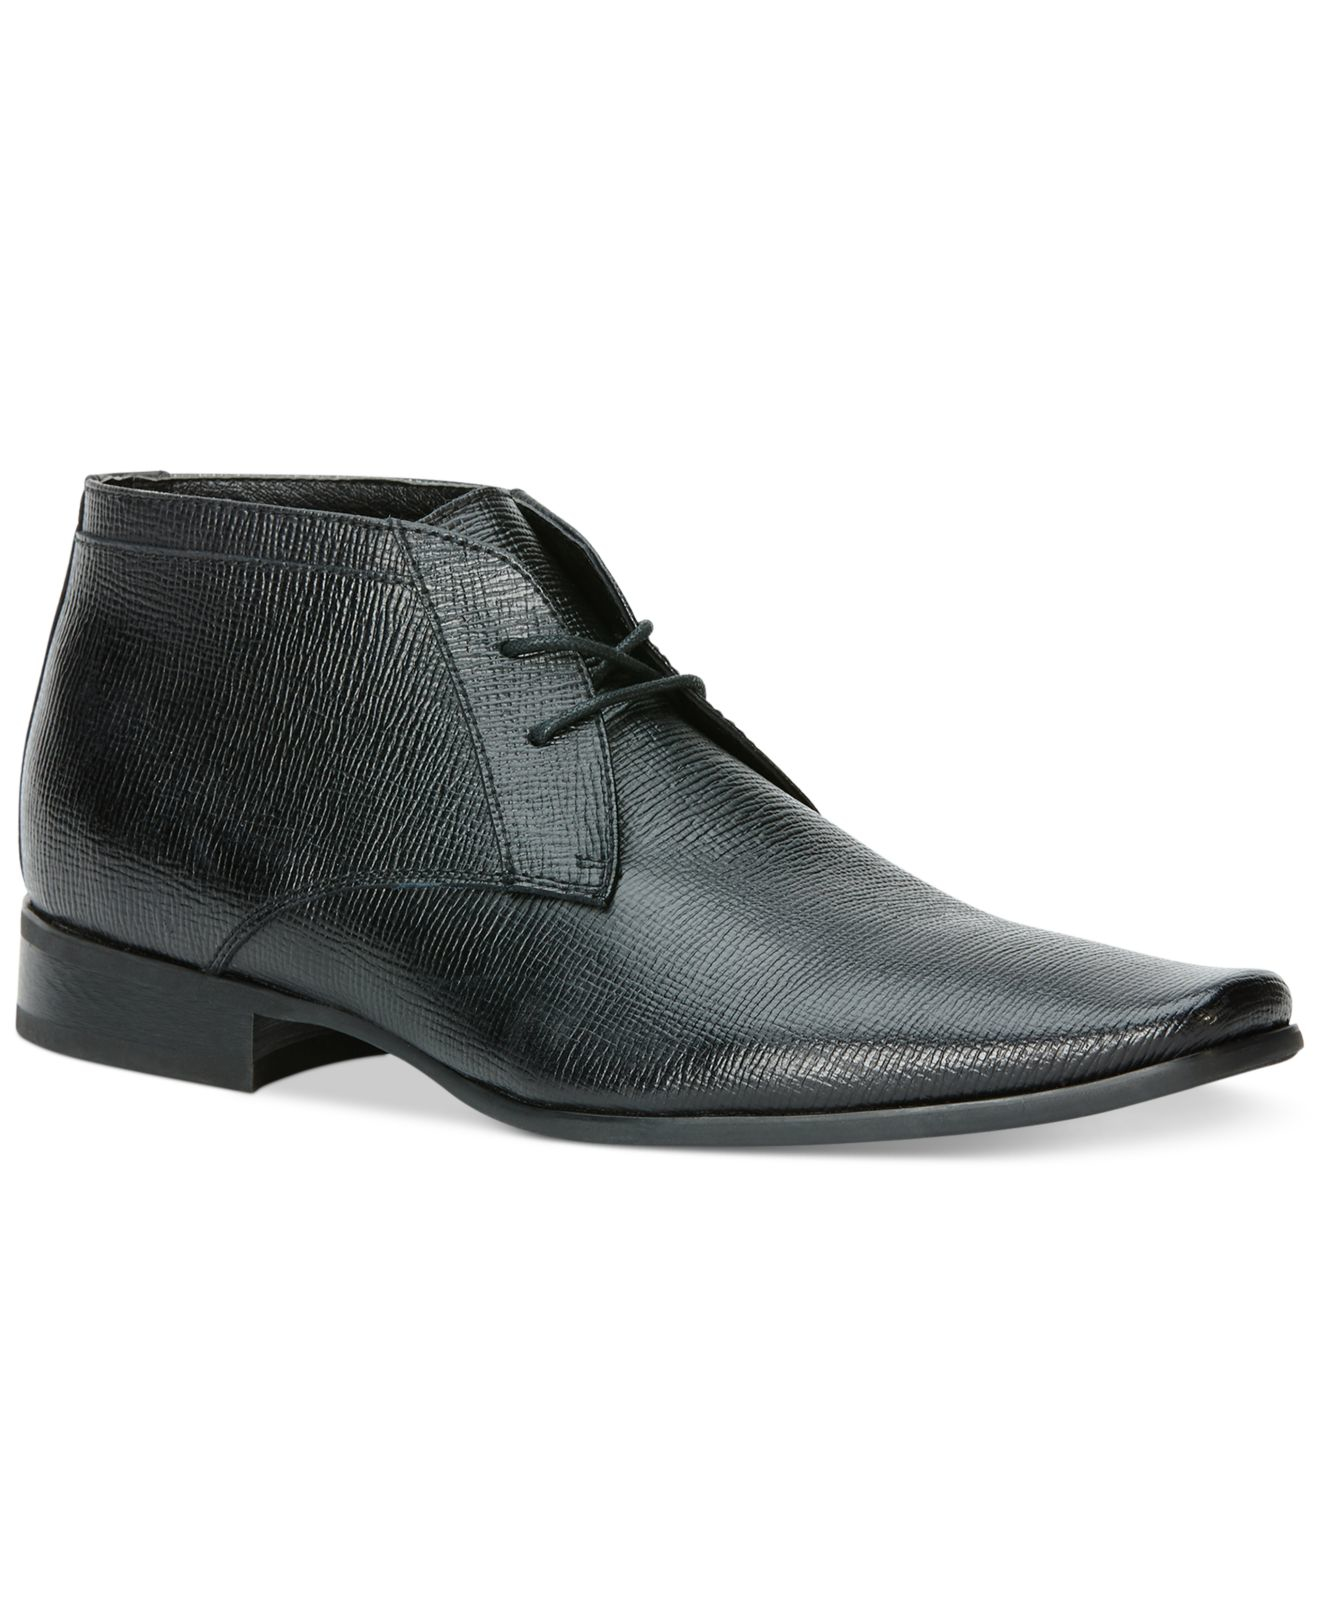 Calvin Klein Ballard Epi Textured Leather Boots in Black for Men